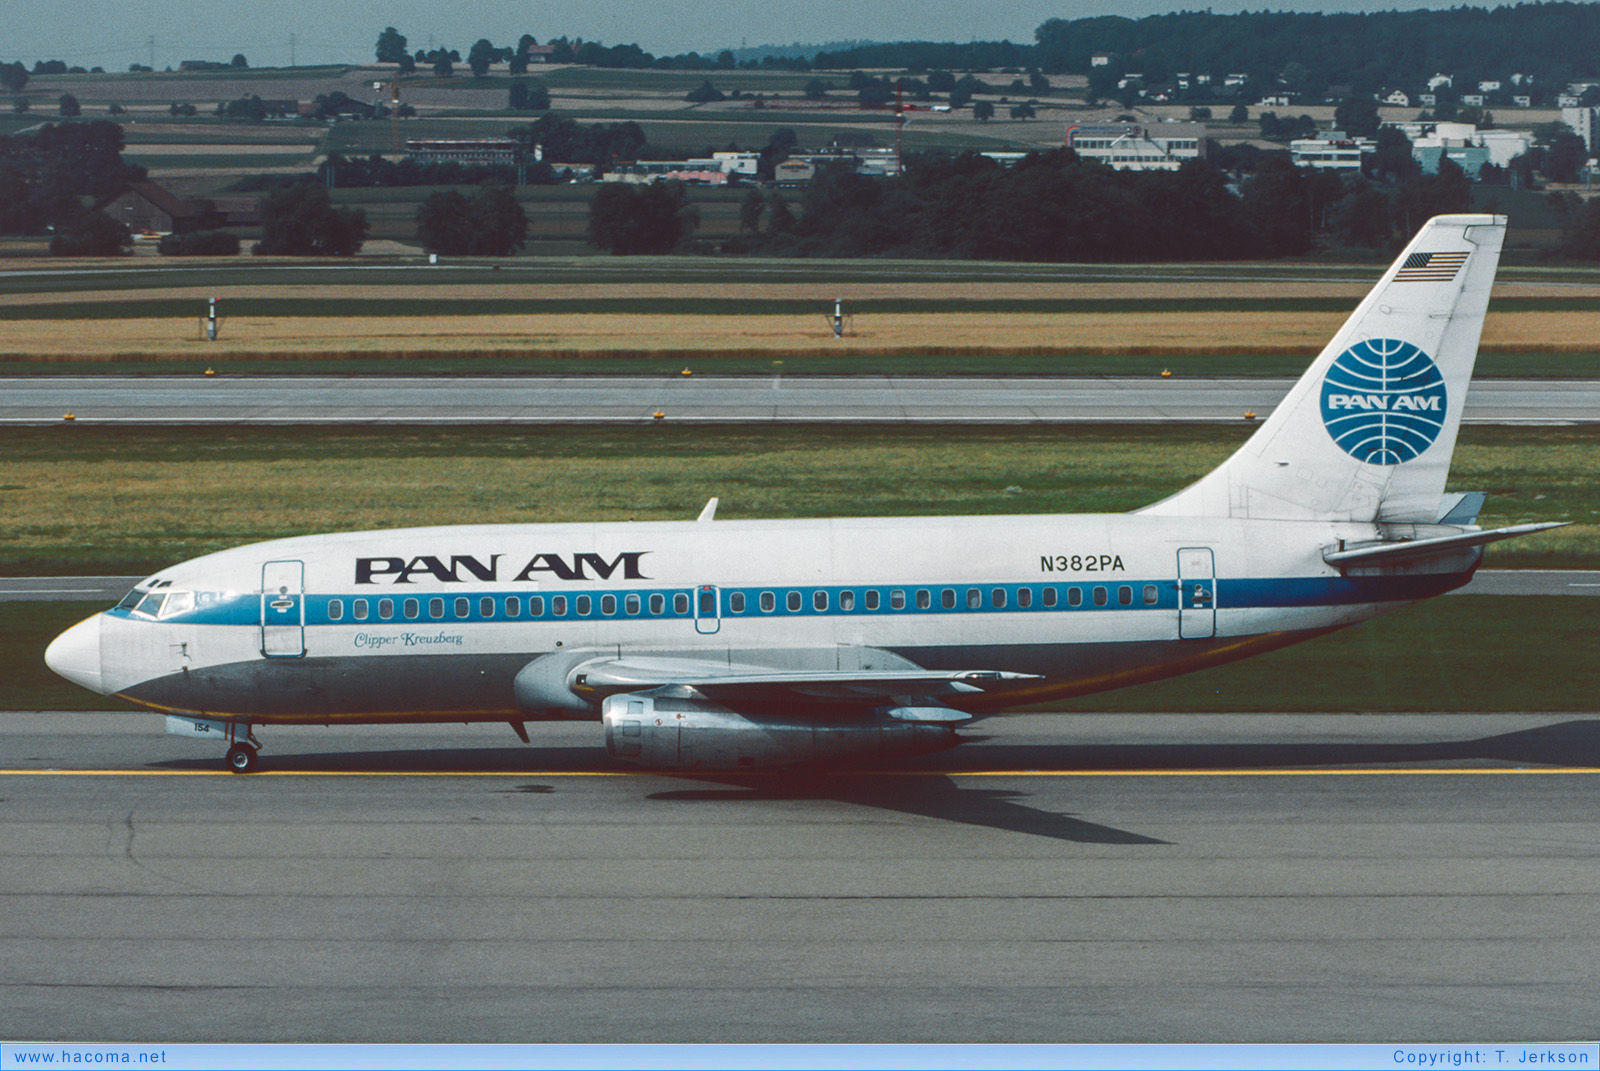 Photo of N382PA - Pan Am Clipper Kreuzberg - Zurich International Airport - 1985